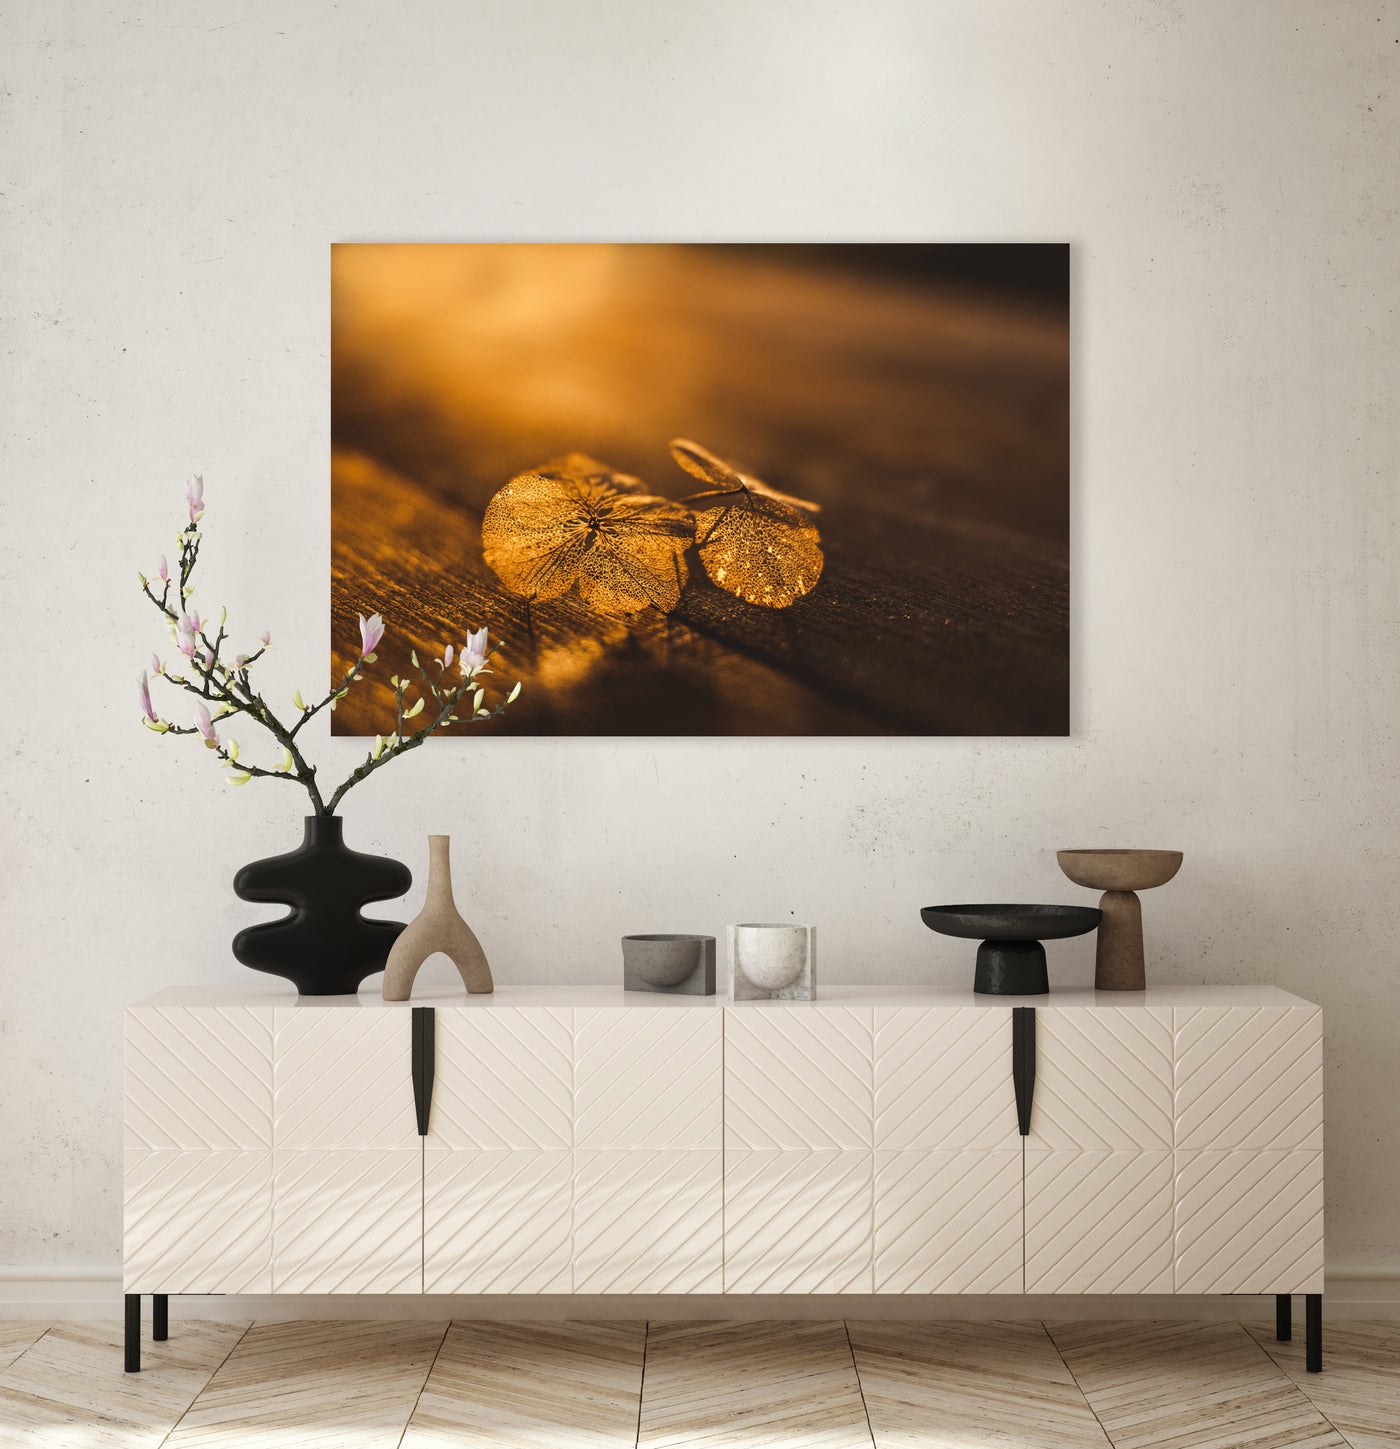 Zerbrechliches Blütenblatt im goldenen Sonnenlicht - Mayra Photography